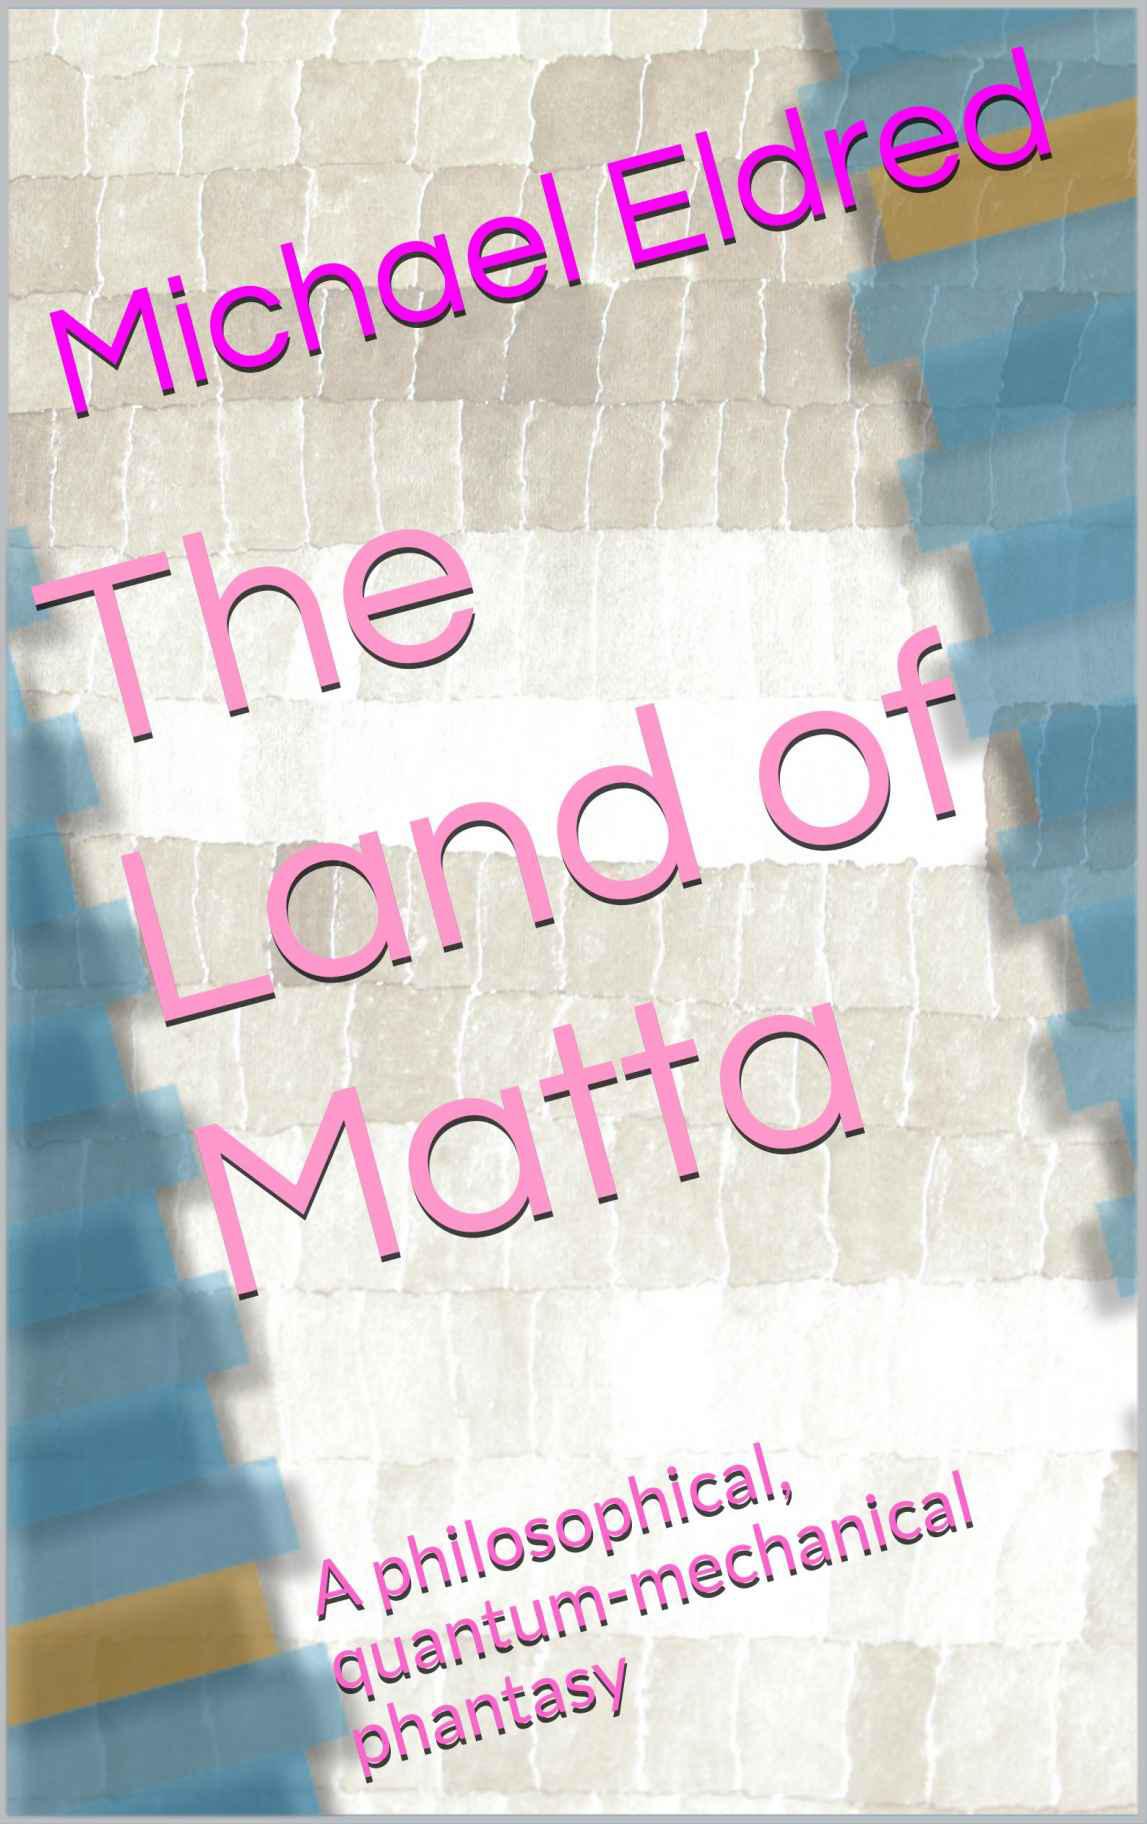 e-book cover: The Land of Matta at Amazon.com